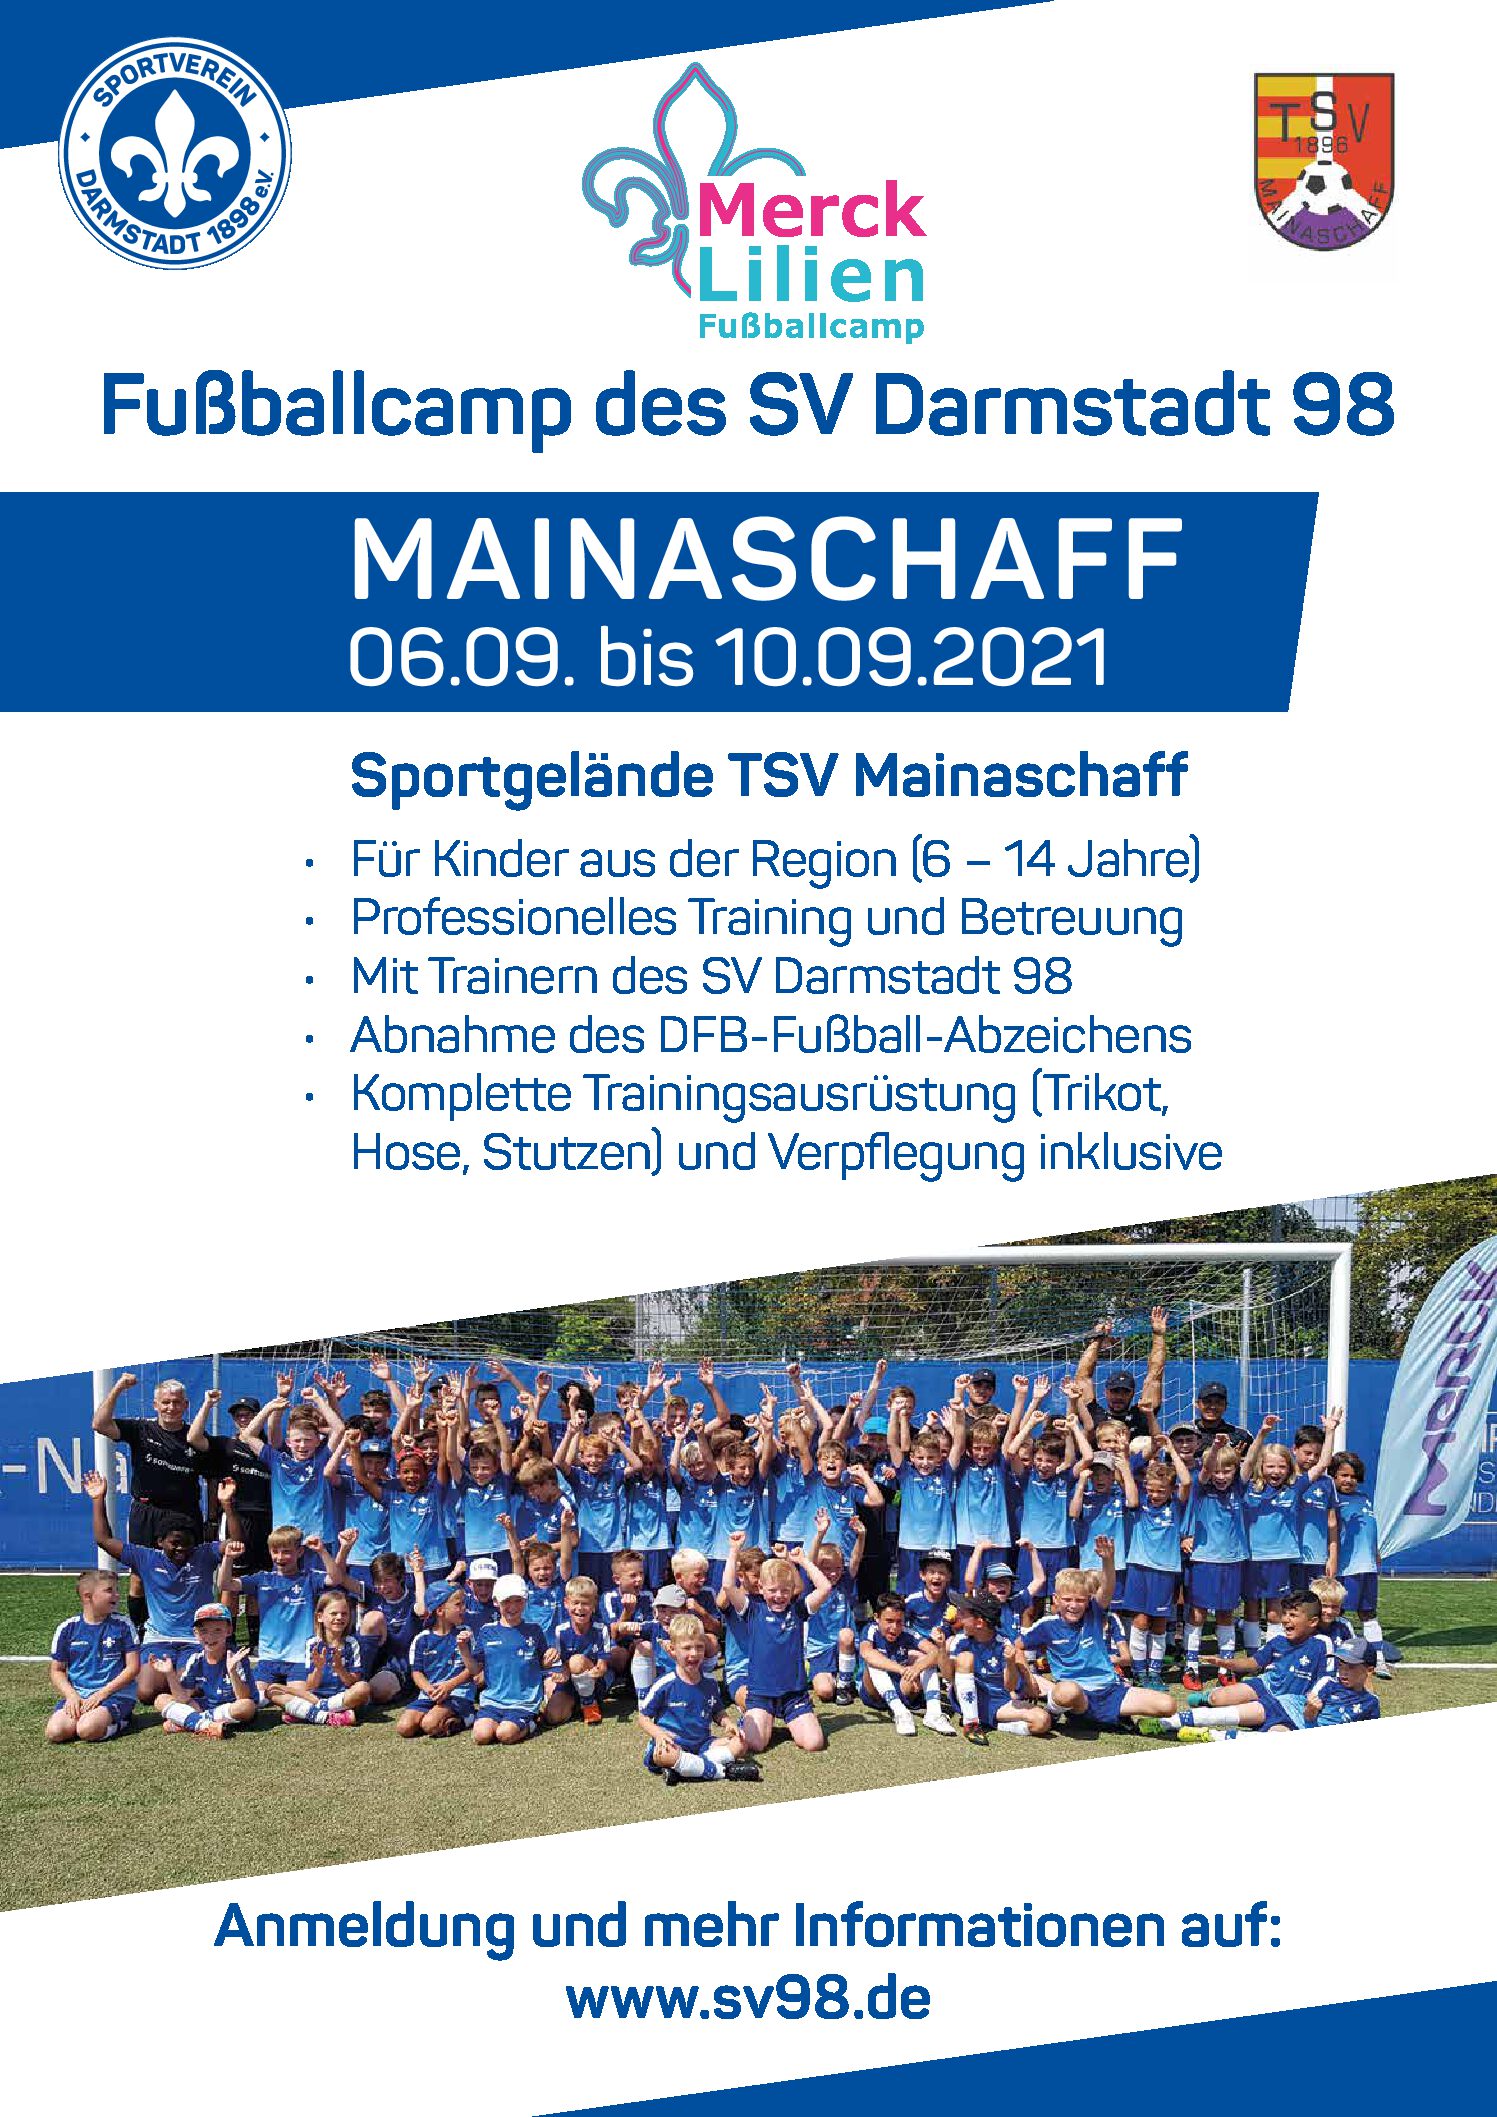 *** Fußball Camp von Darmstadt 98 ***